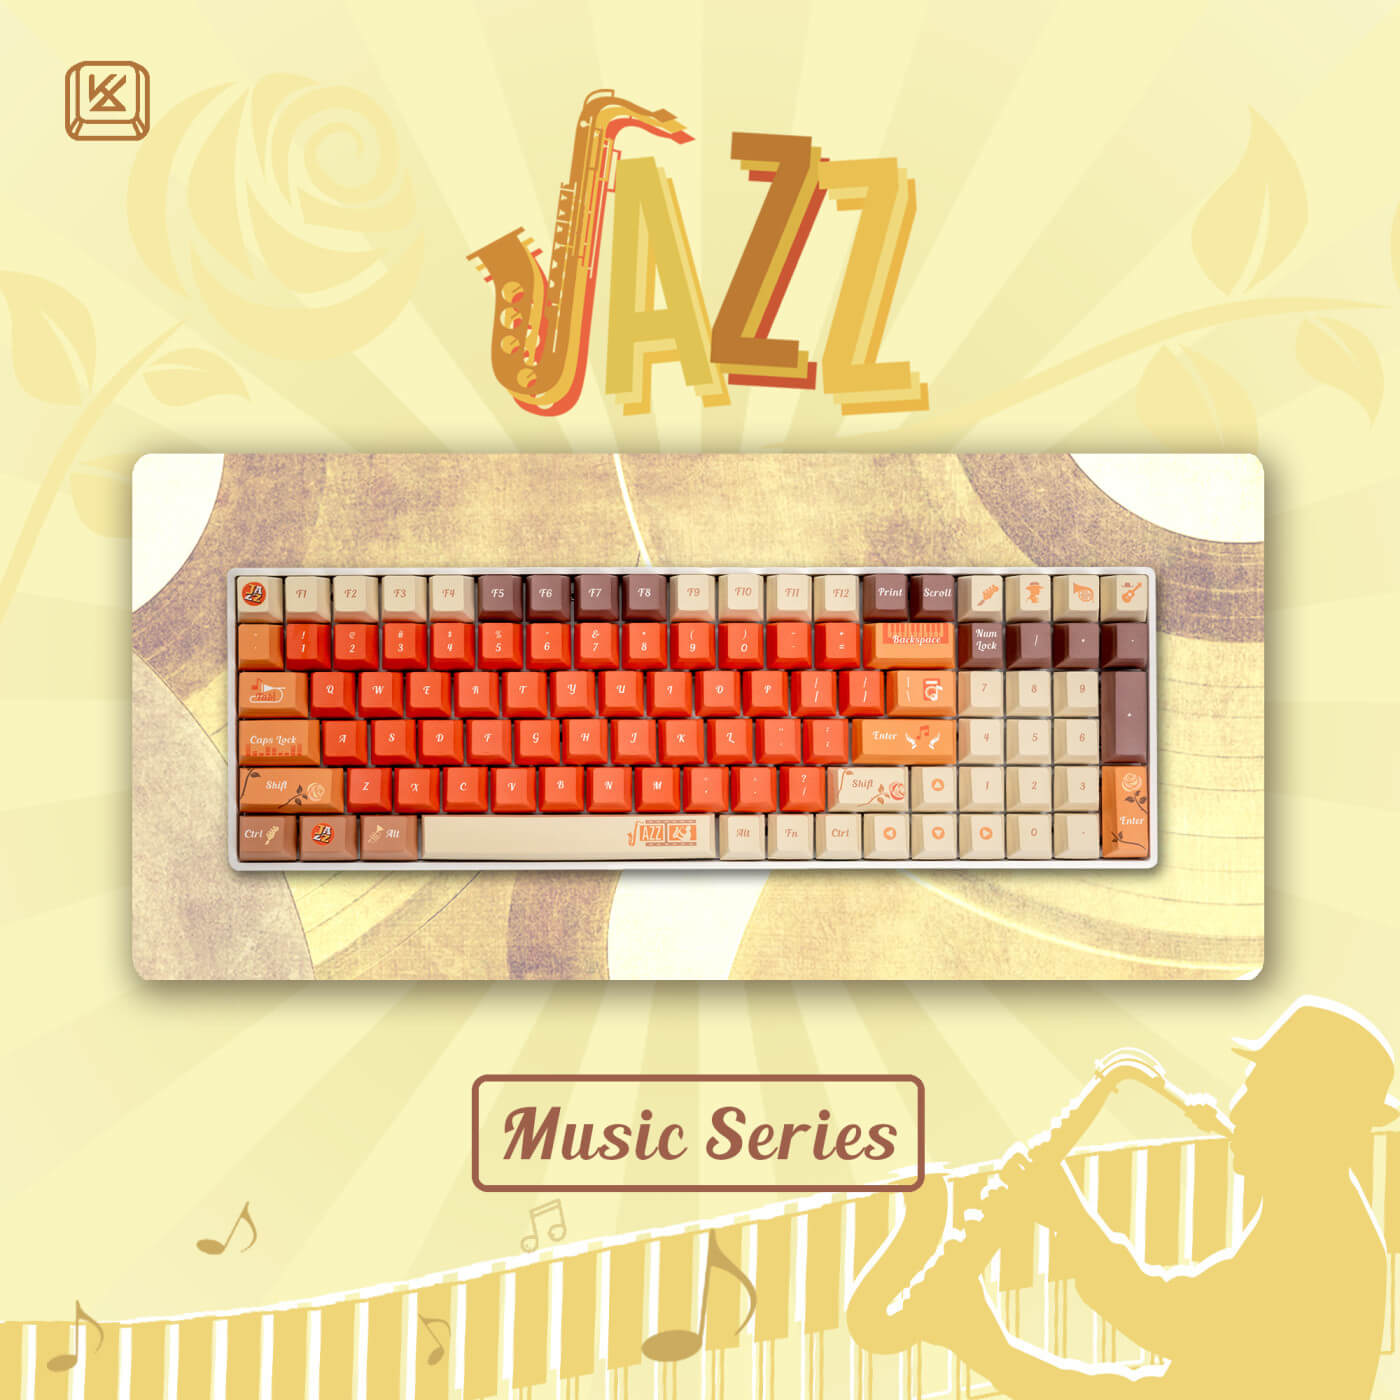 jazz music keyboards